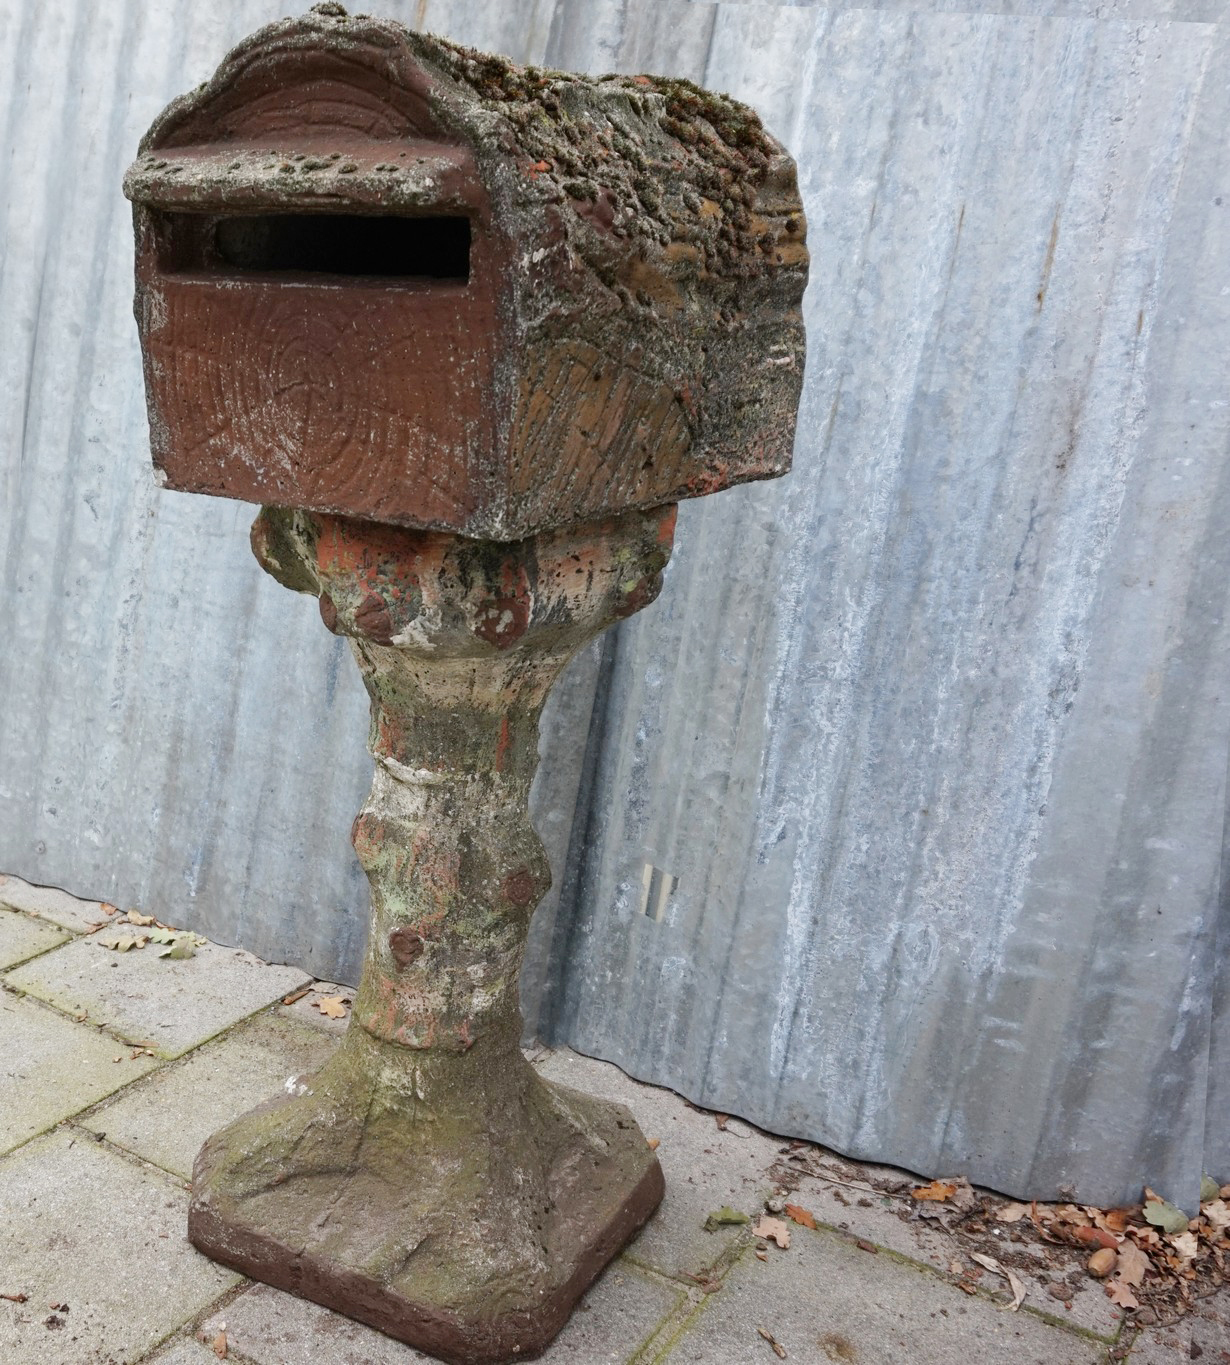 oud-betonnen-brievenbus-huisje-vogelhuisje-antiek-faux-bois-concrete-bird-house-mailbox-letterbox